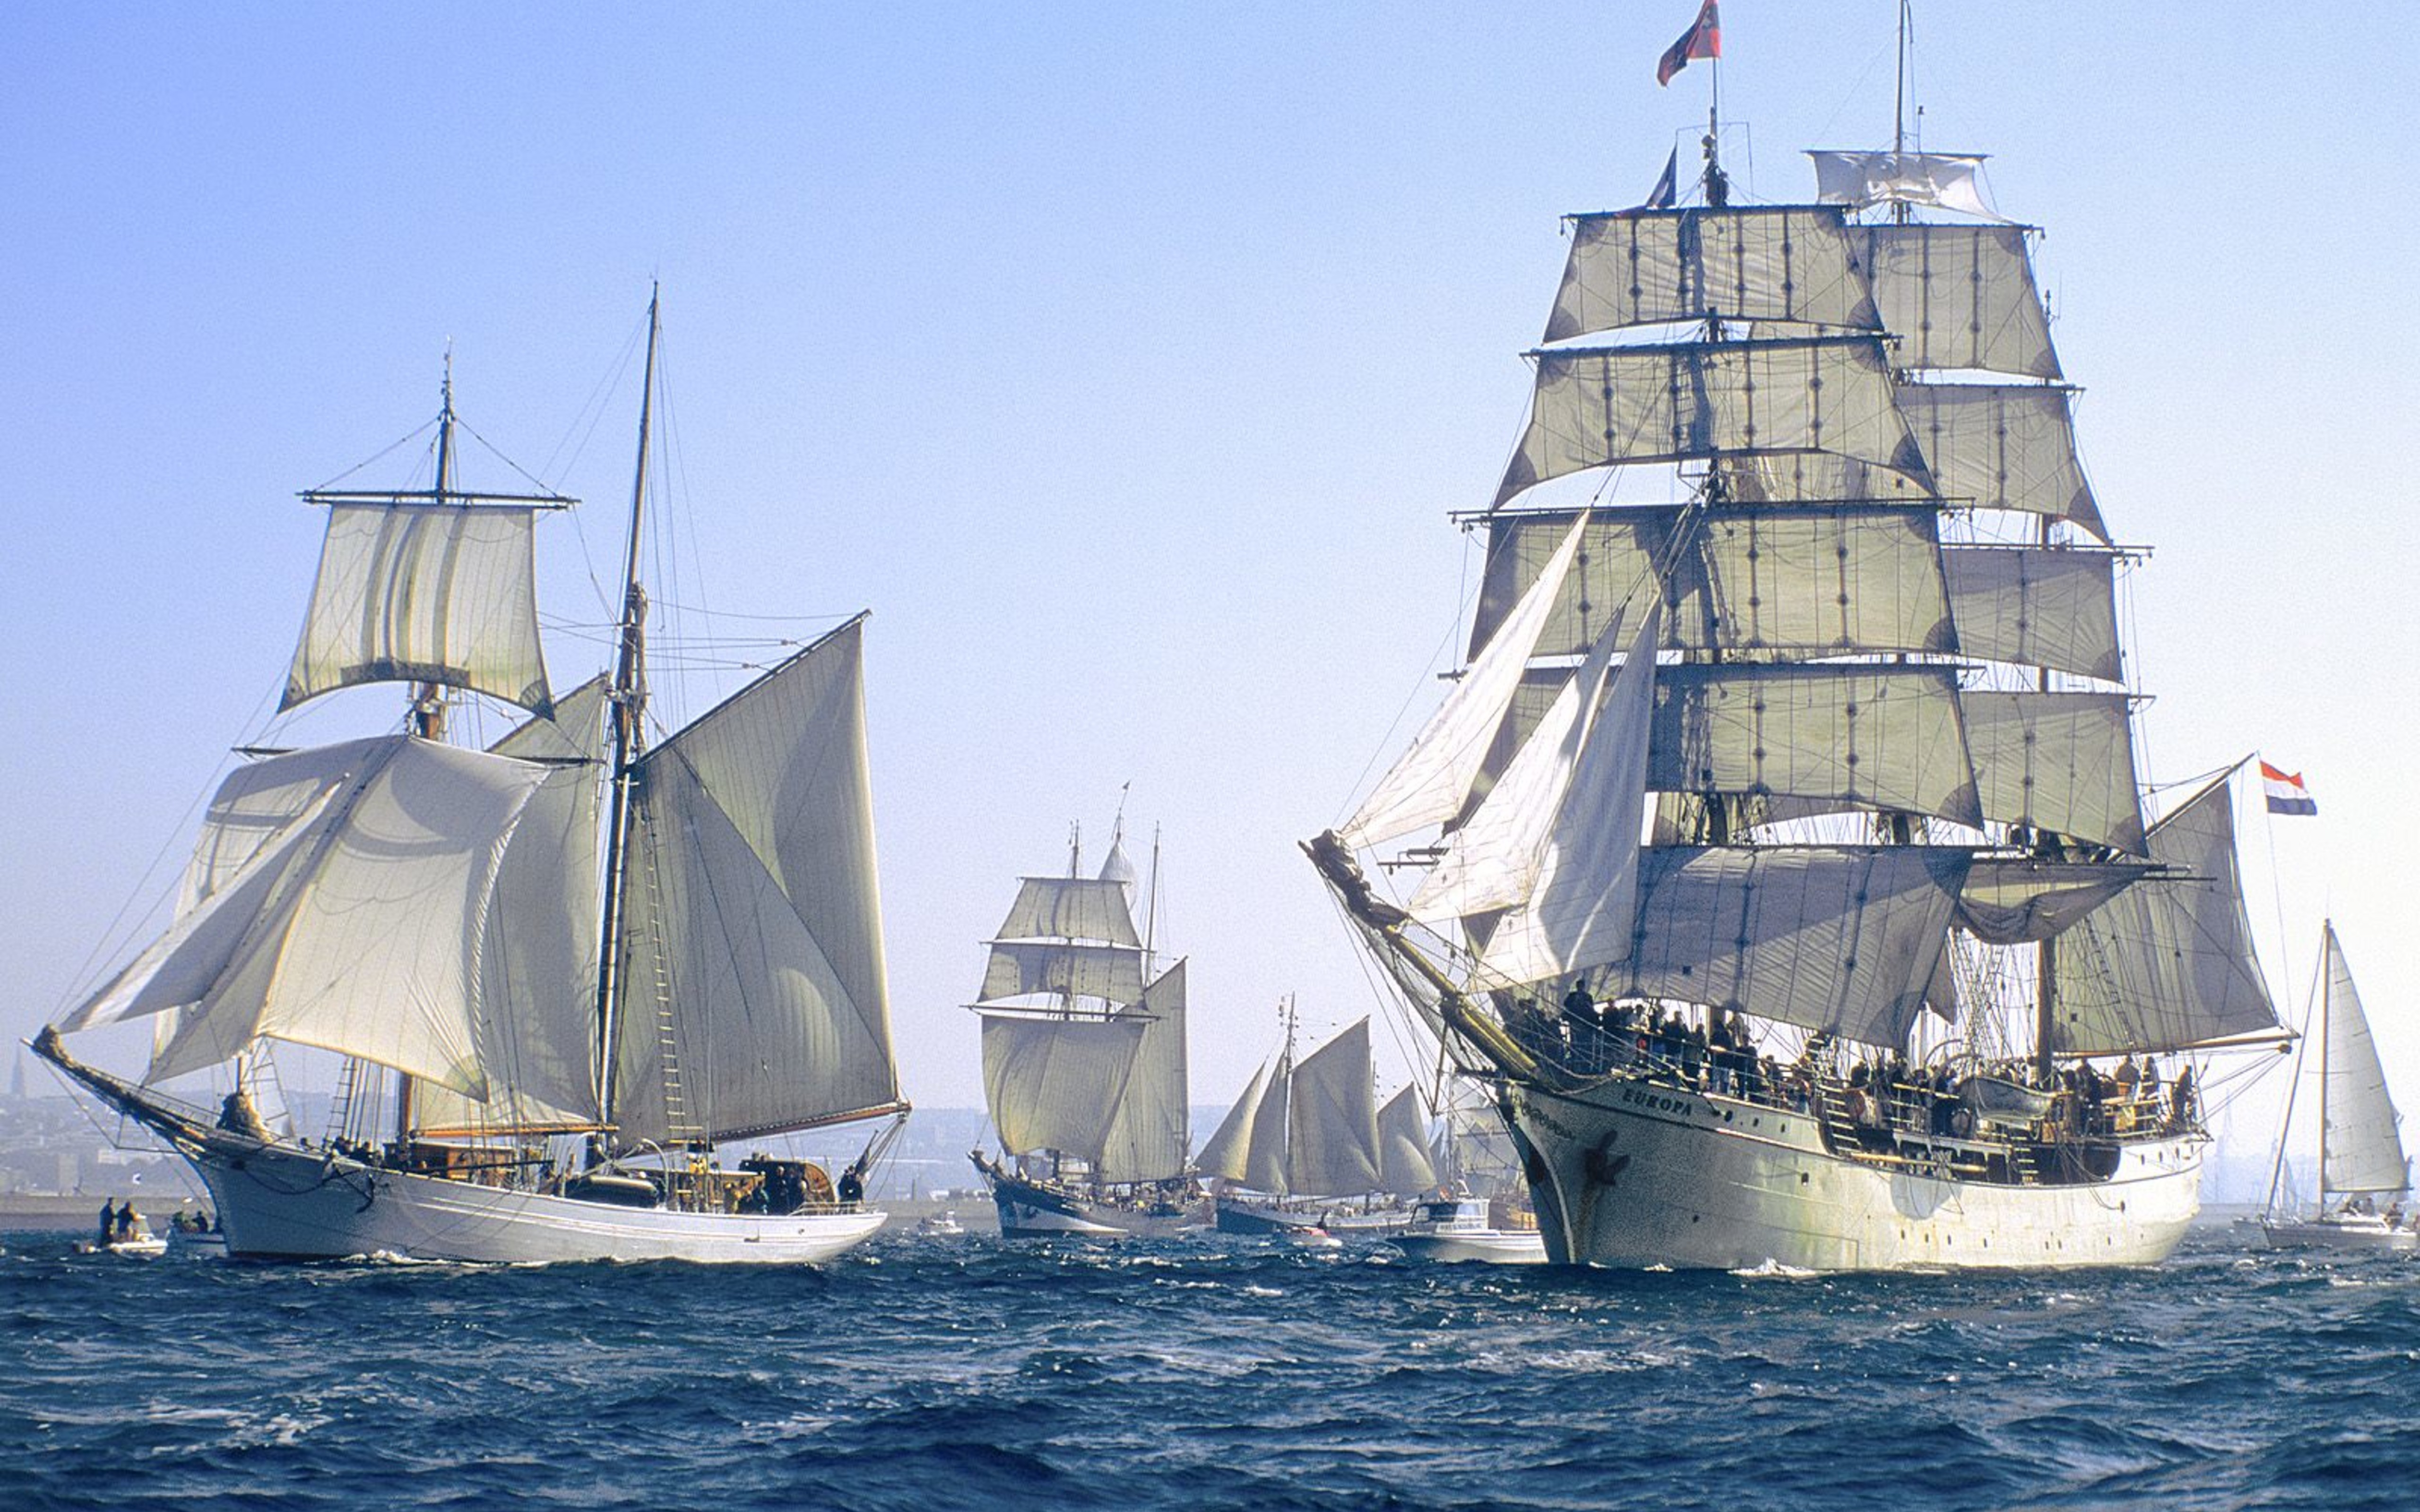 Sailing boats - The great Armada